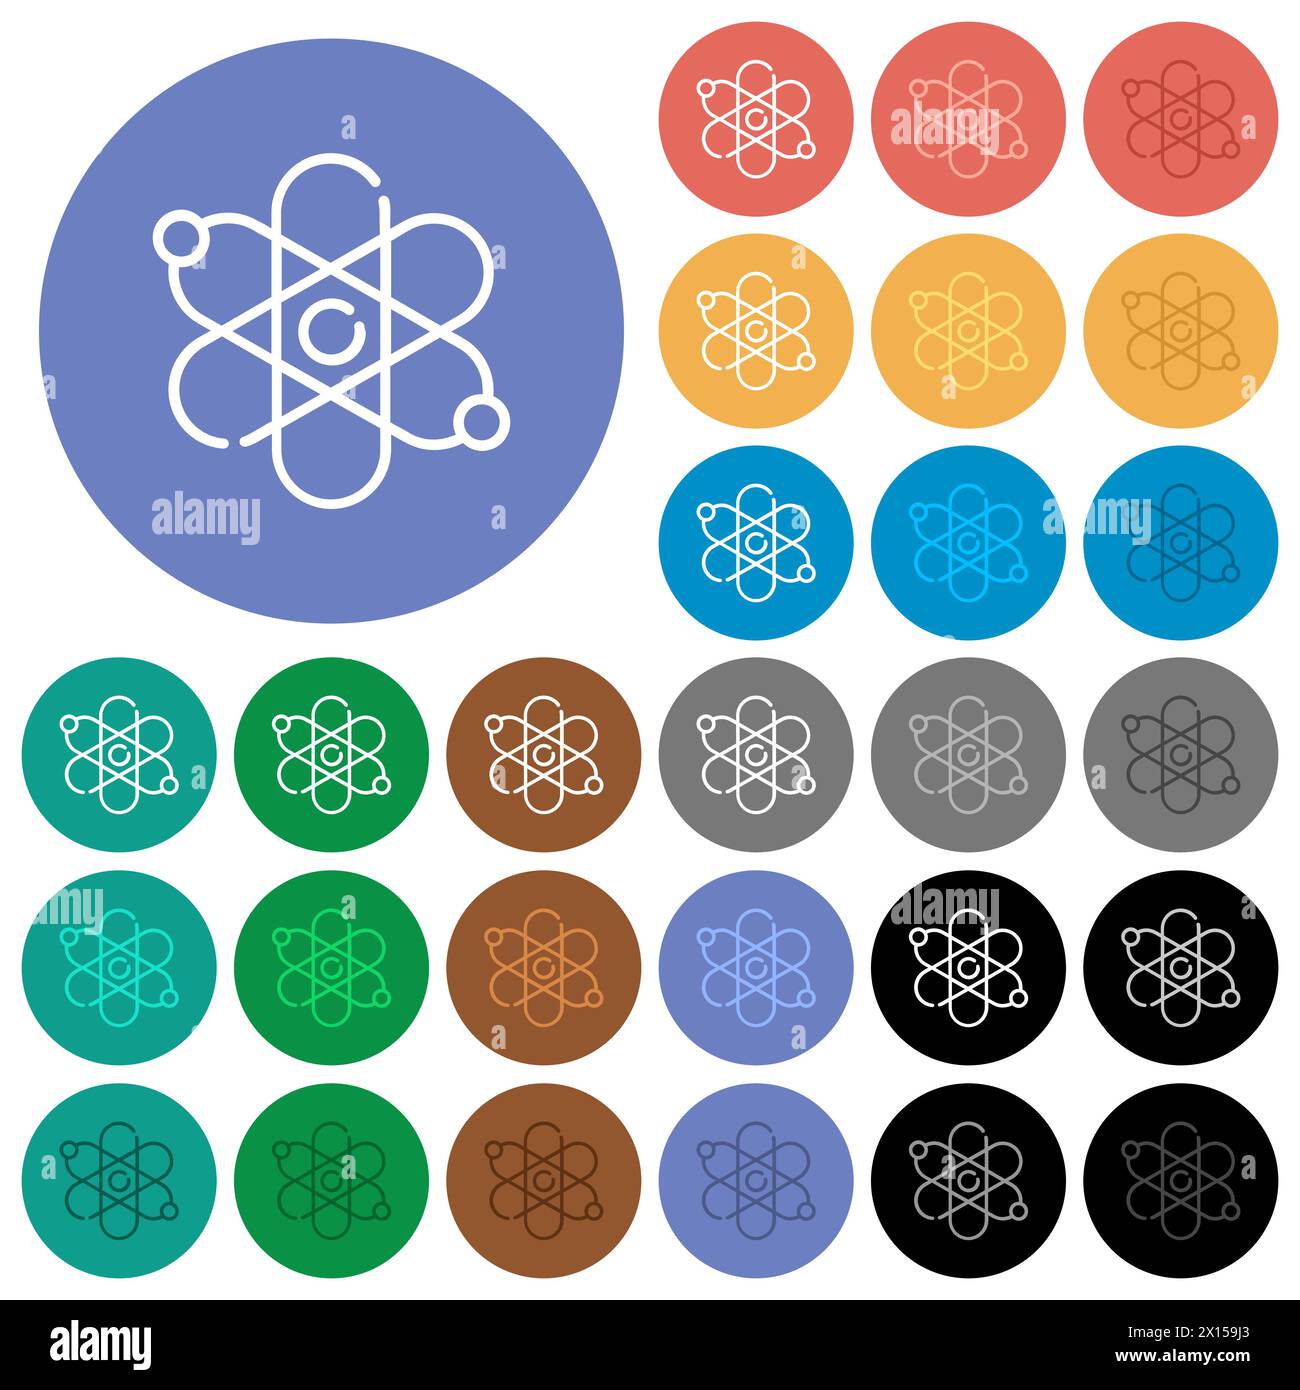 Physik mehrfarbige flache Symbole auf runden Hintergründen. Enthält weiße, helle und dunkle Symbolvarianten für Mover- und aktive Statuseffekte sowie Bonuse Stock Vektor